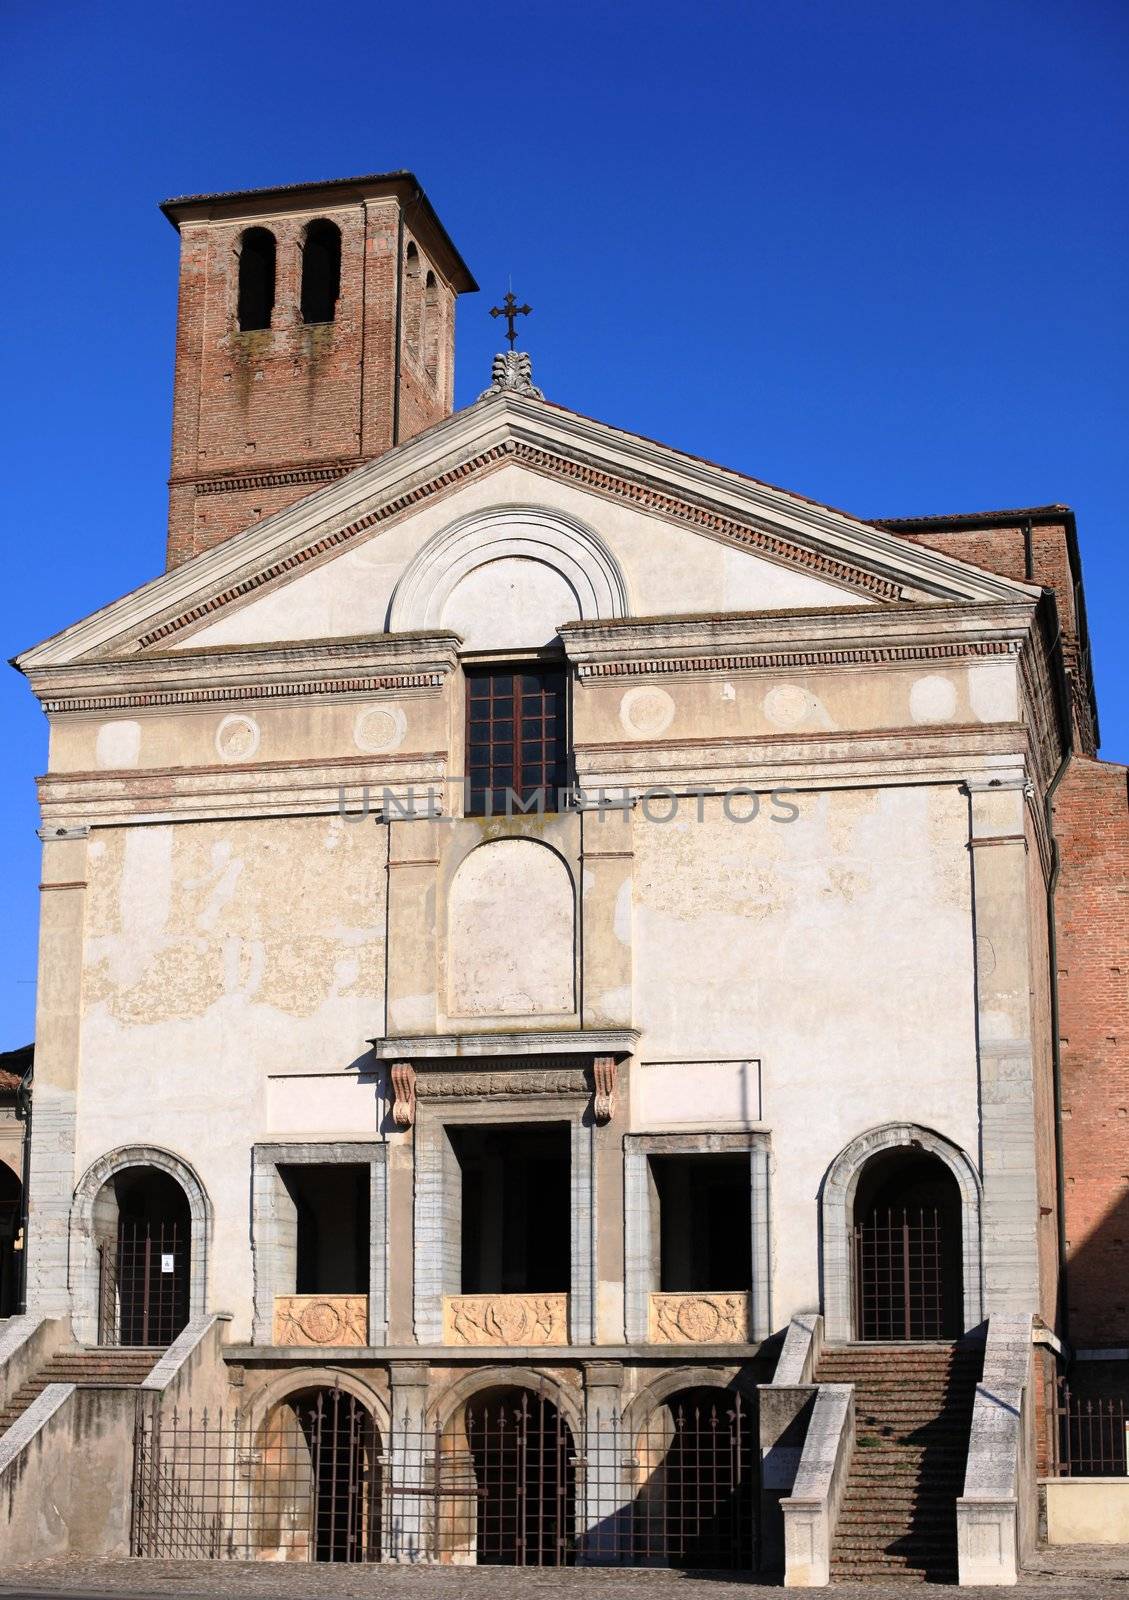 San sebastian facade, Mantua, Italy